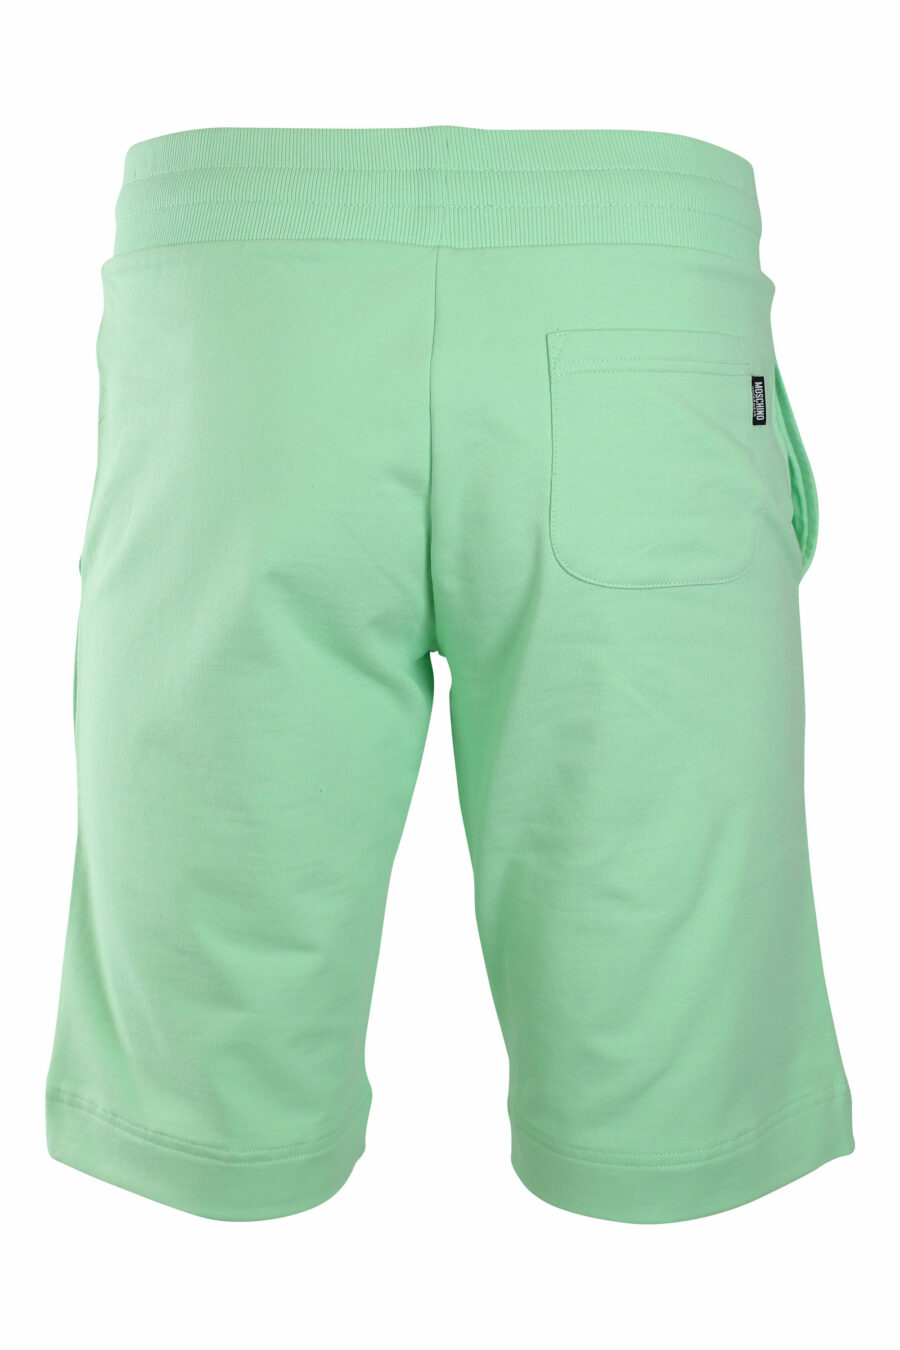 Pantalón de chándal corto verde menta con minilogo oso "underbear" - IMG 2223